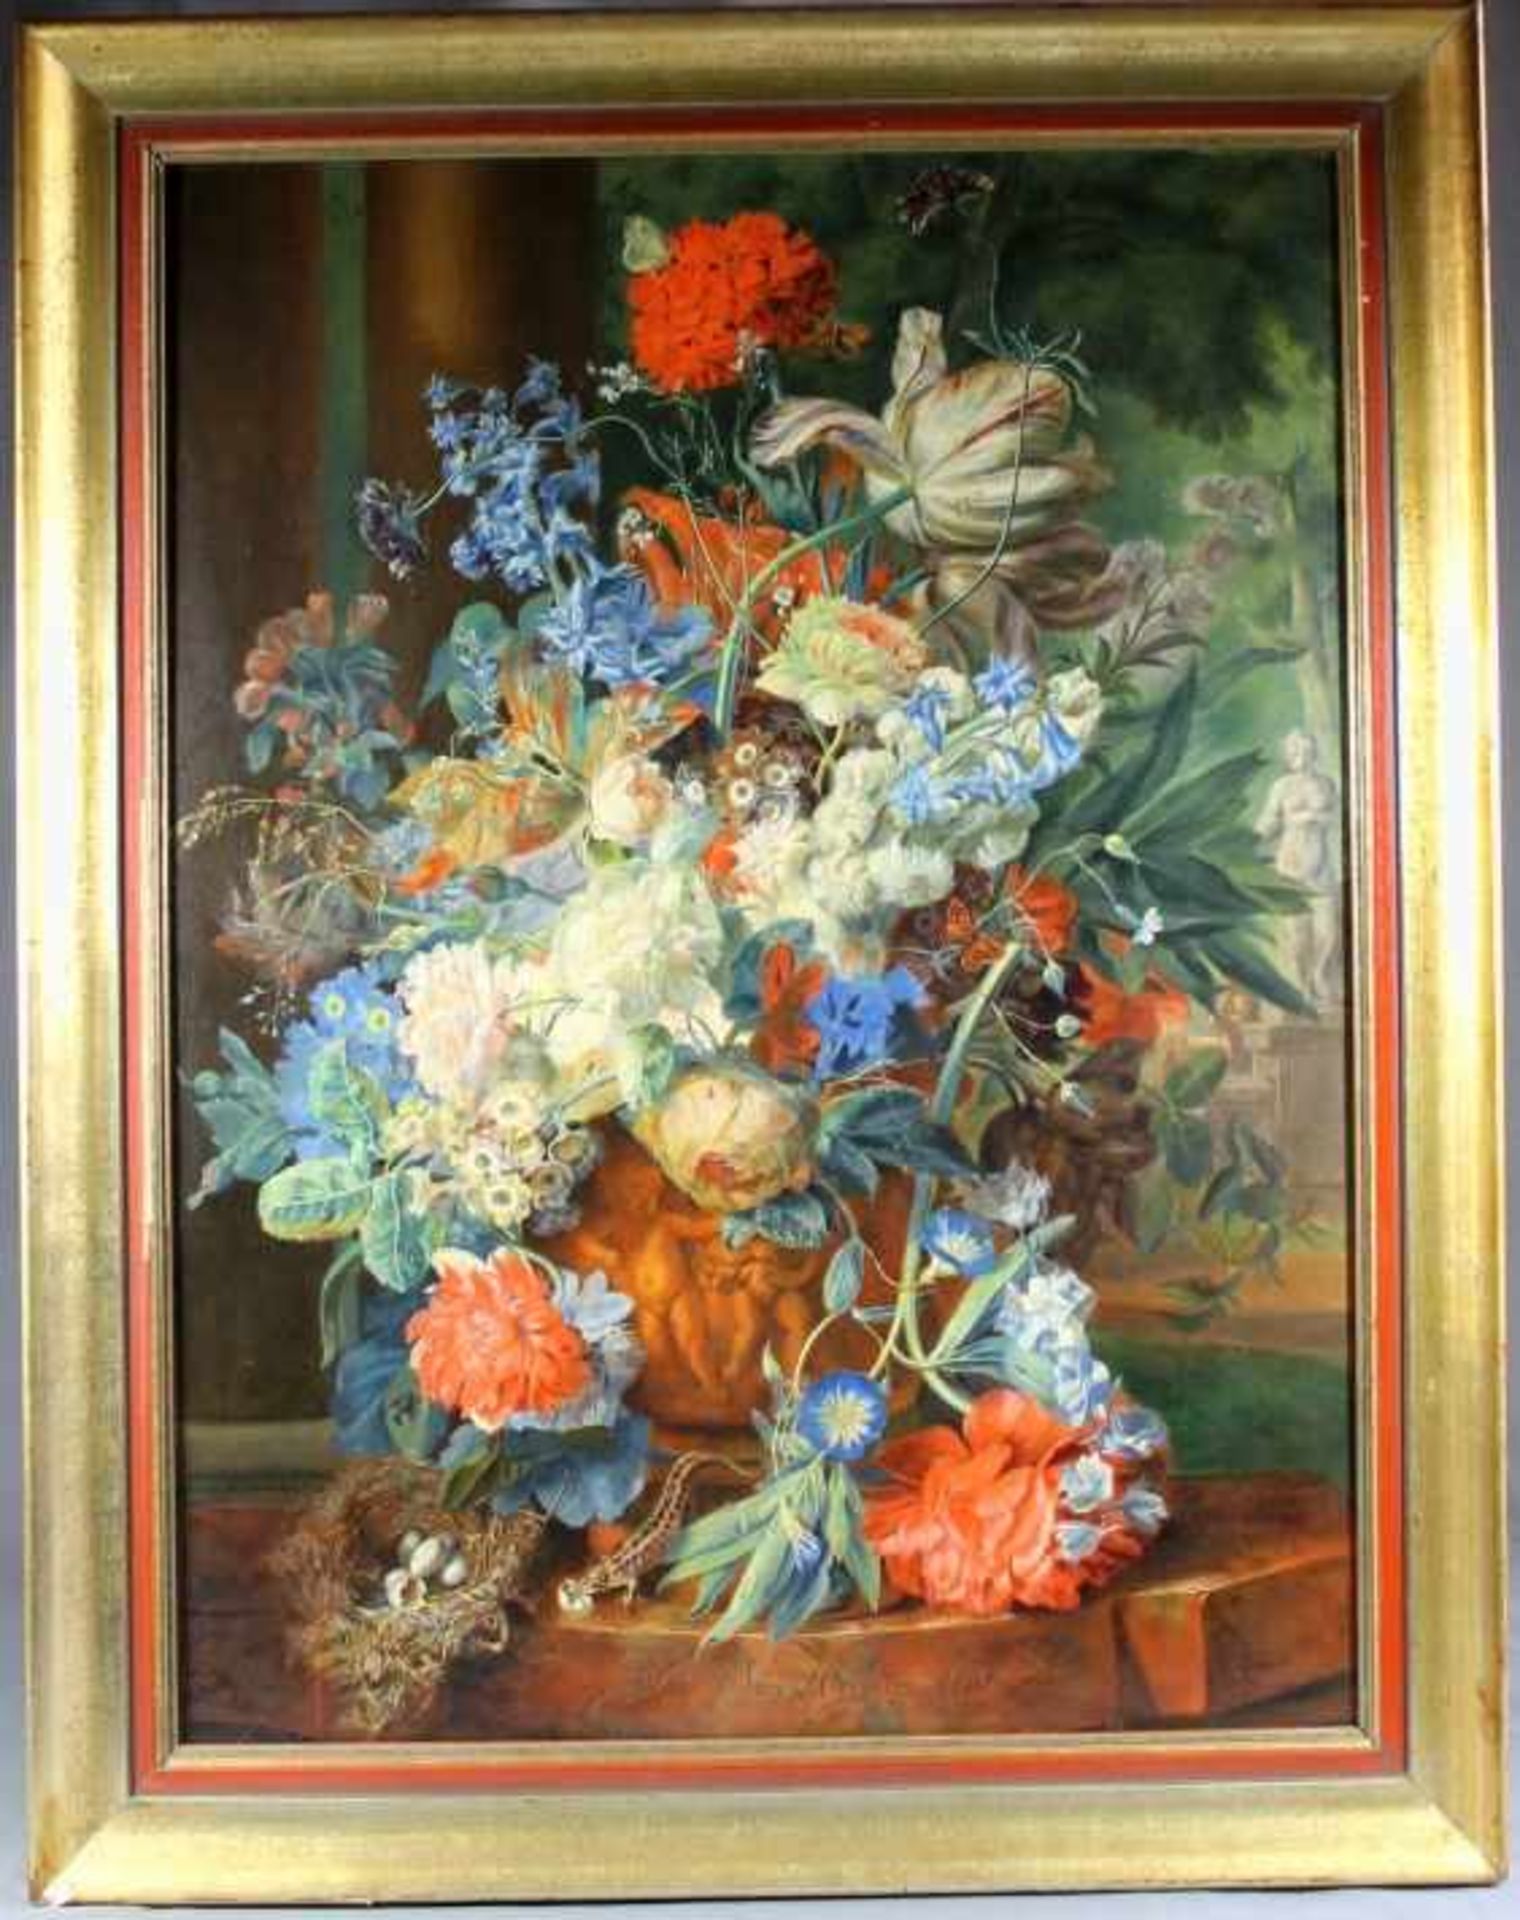 1 großes Bild auf Platte "Blumenstilleben", keine Signatur erkennbar, ca. 79cm x 58,5cm (